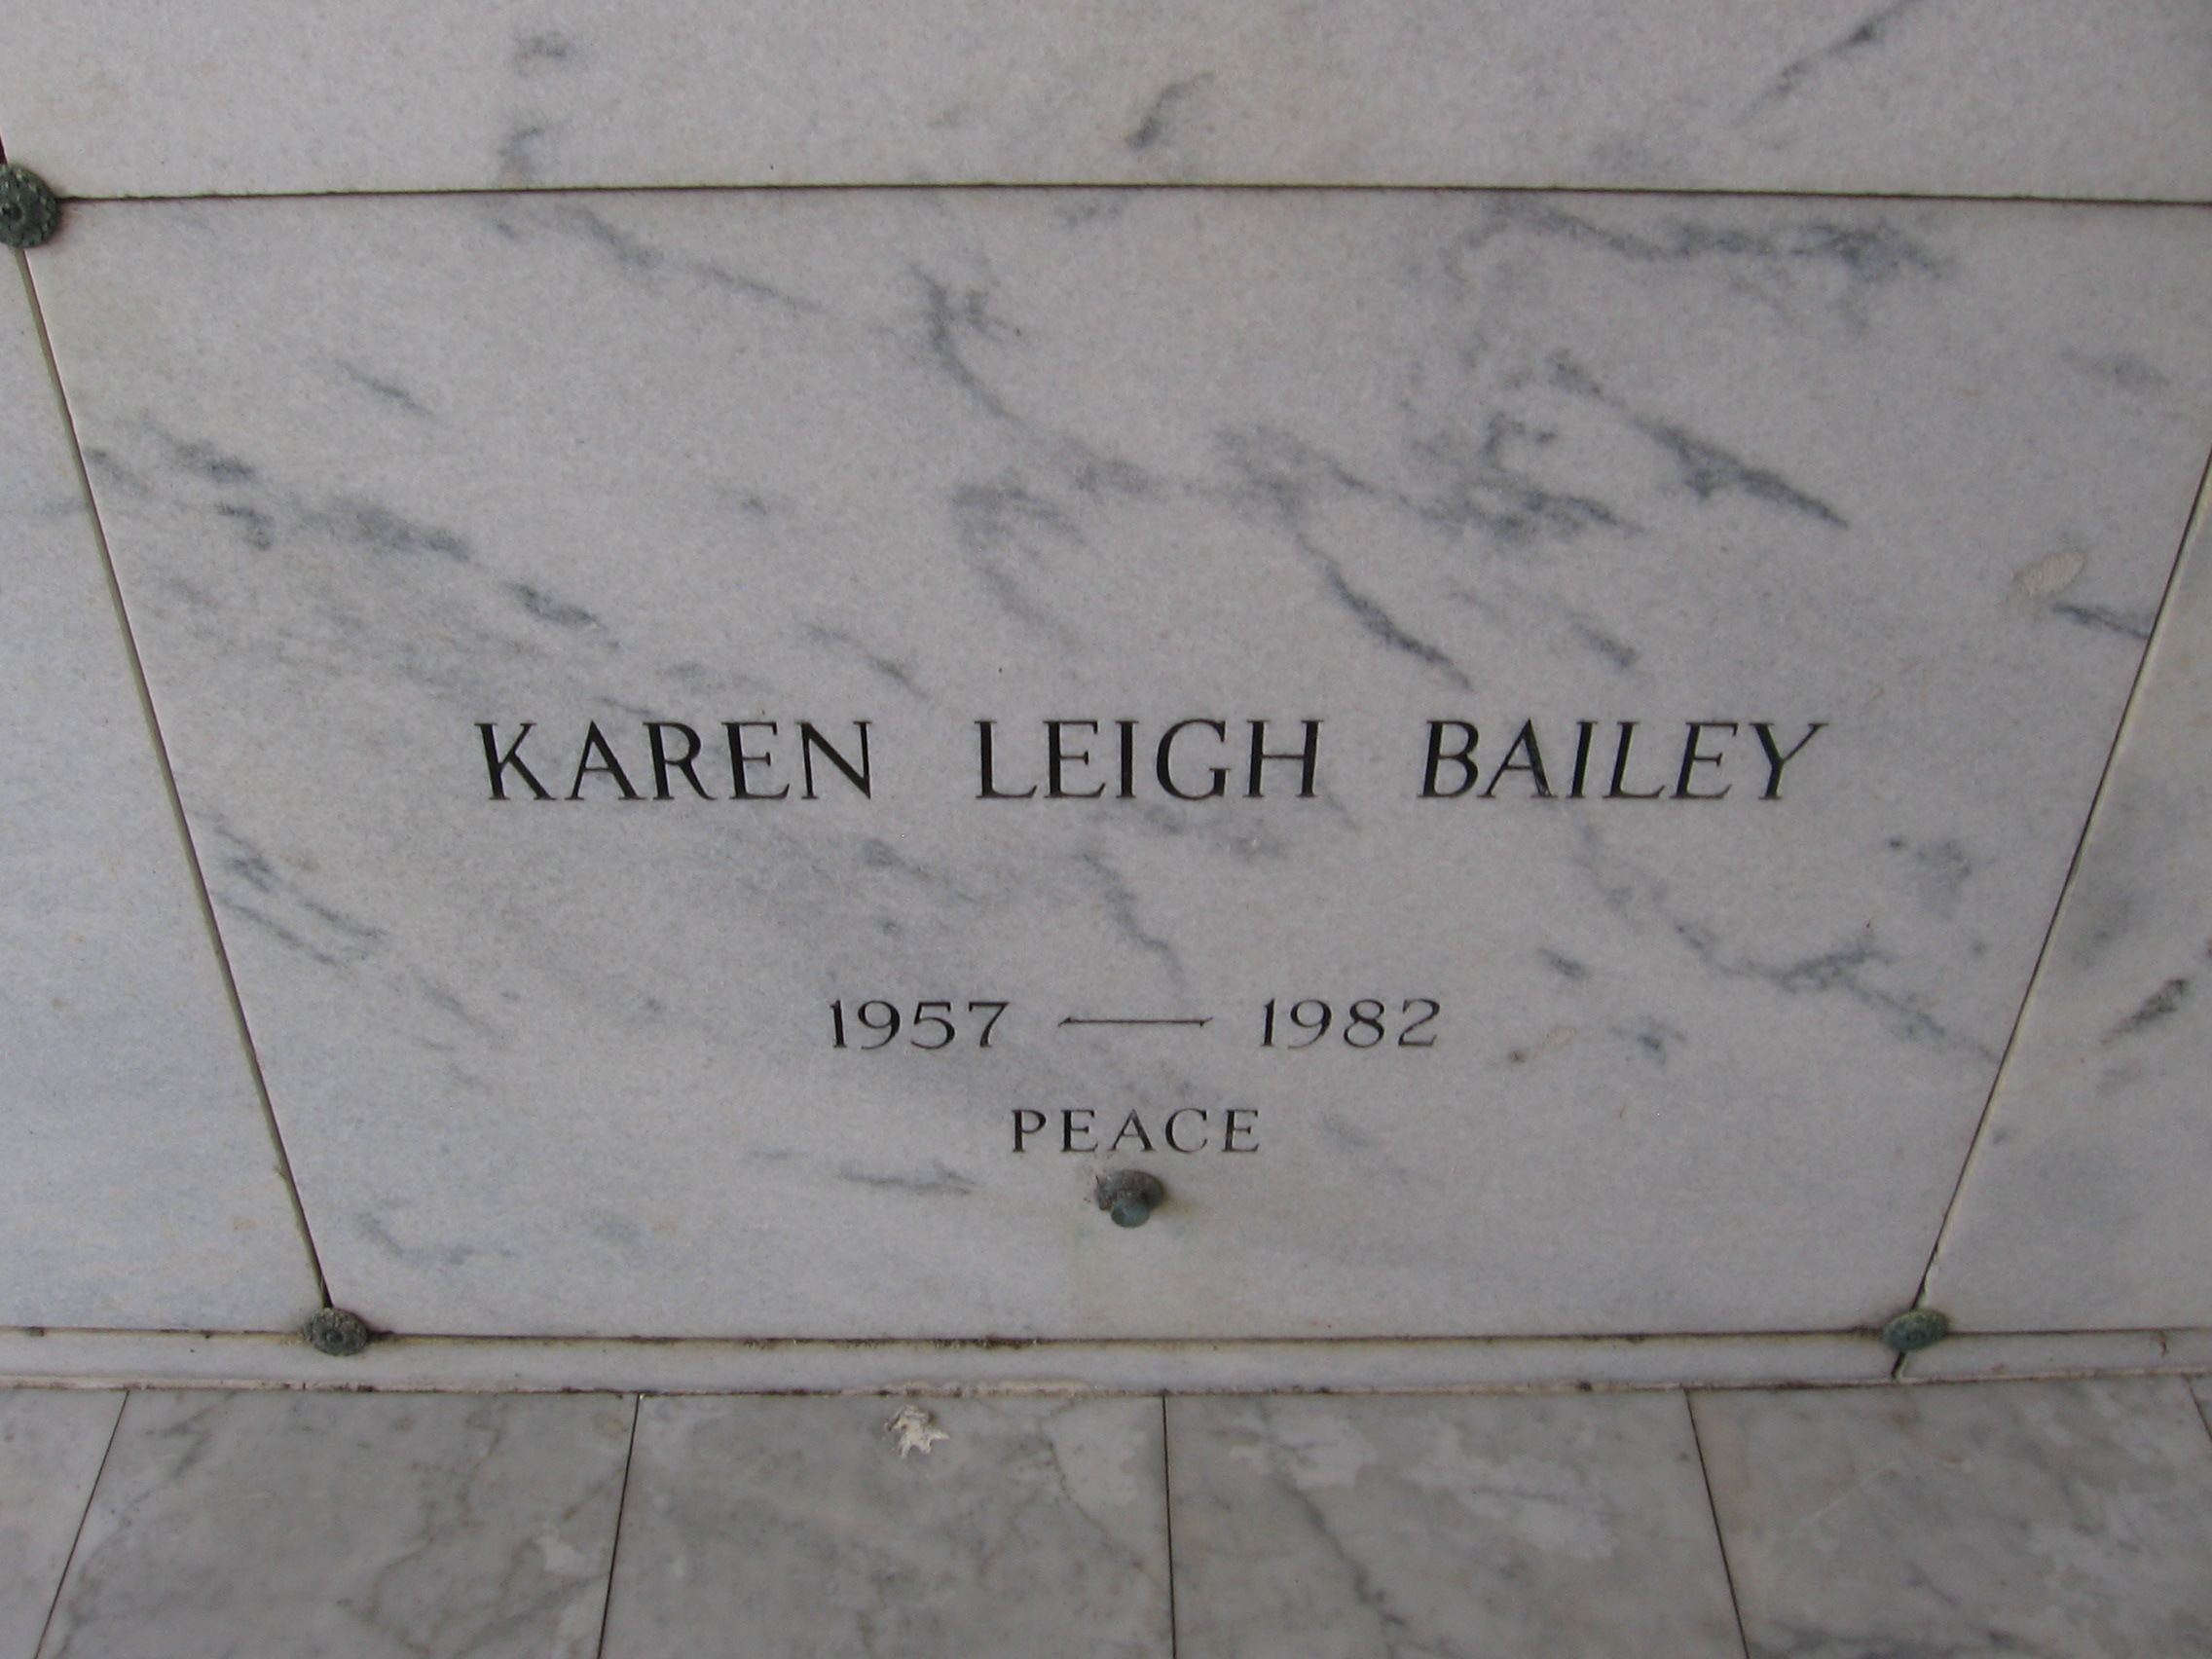 Karen Leigh Bailey